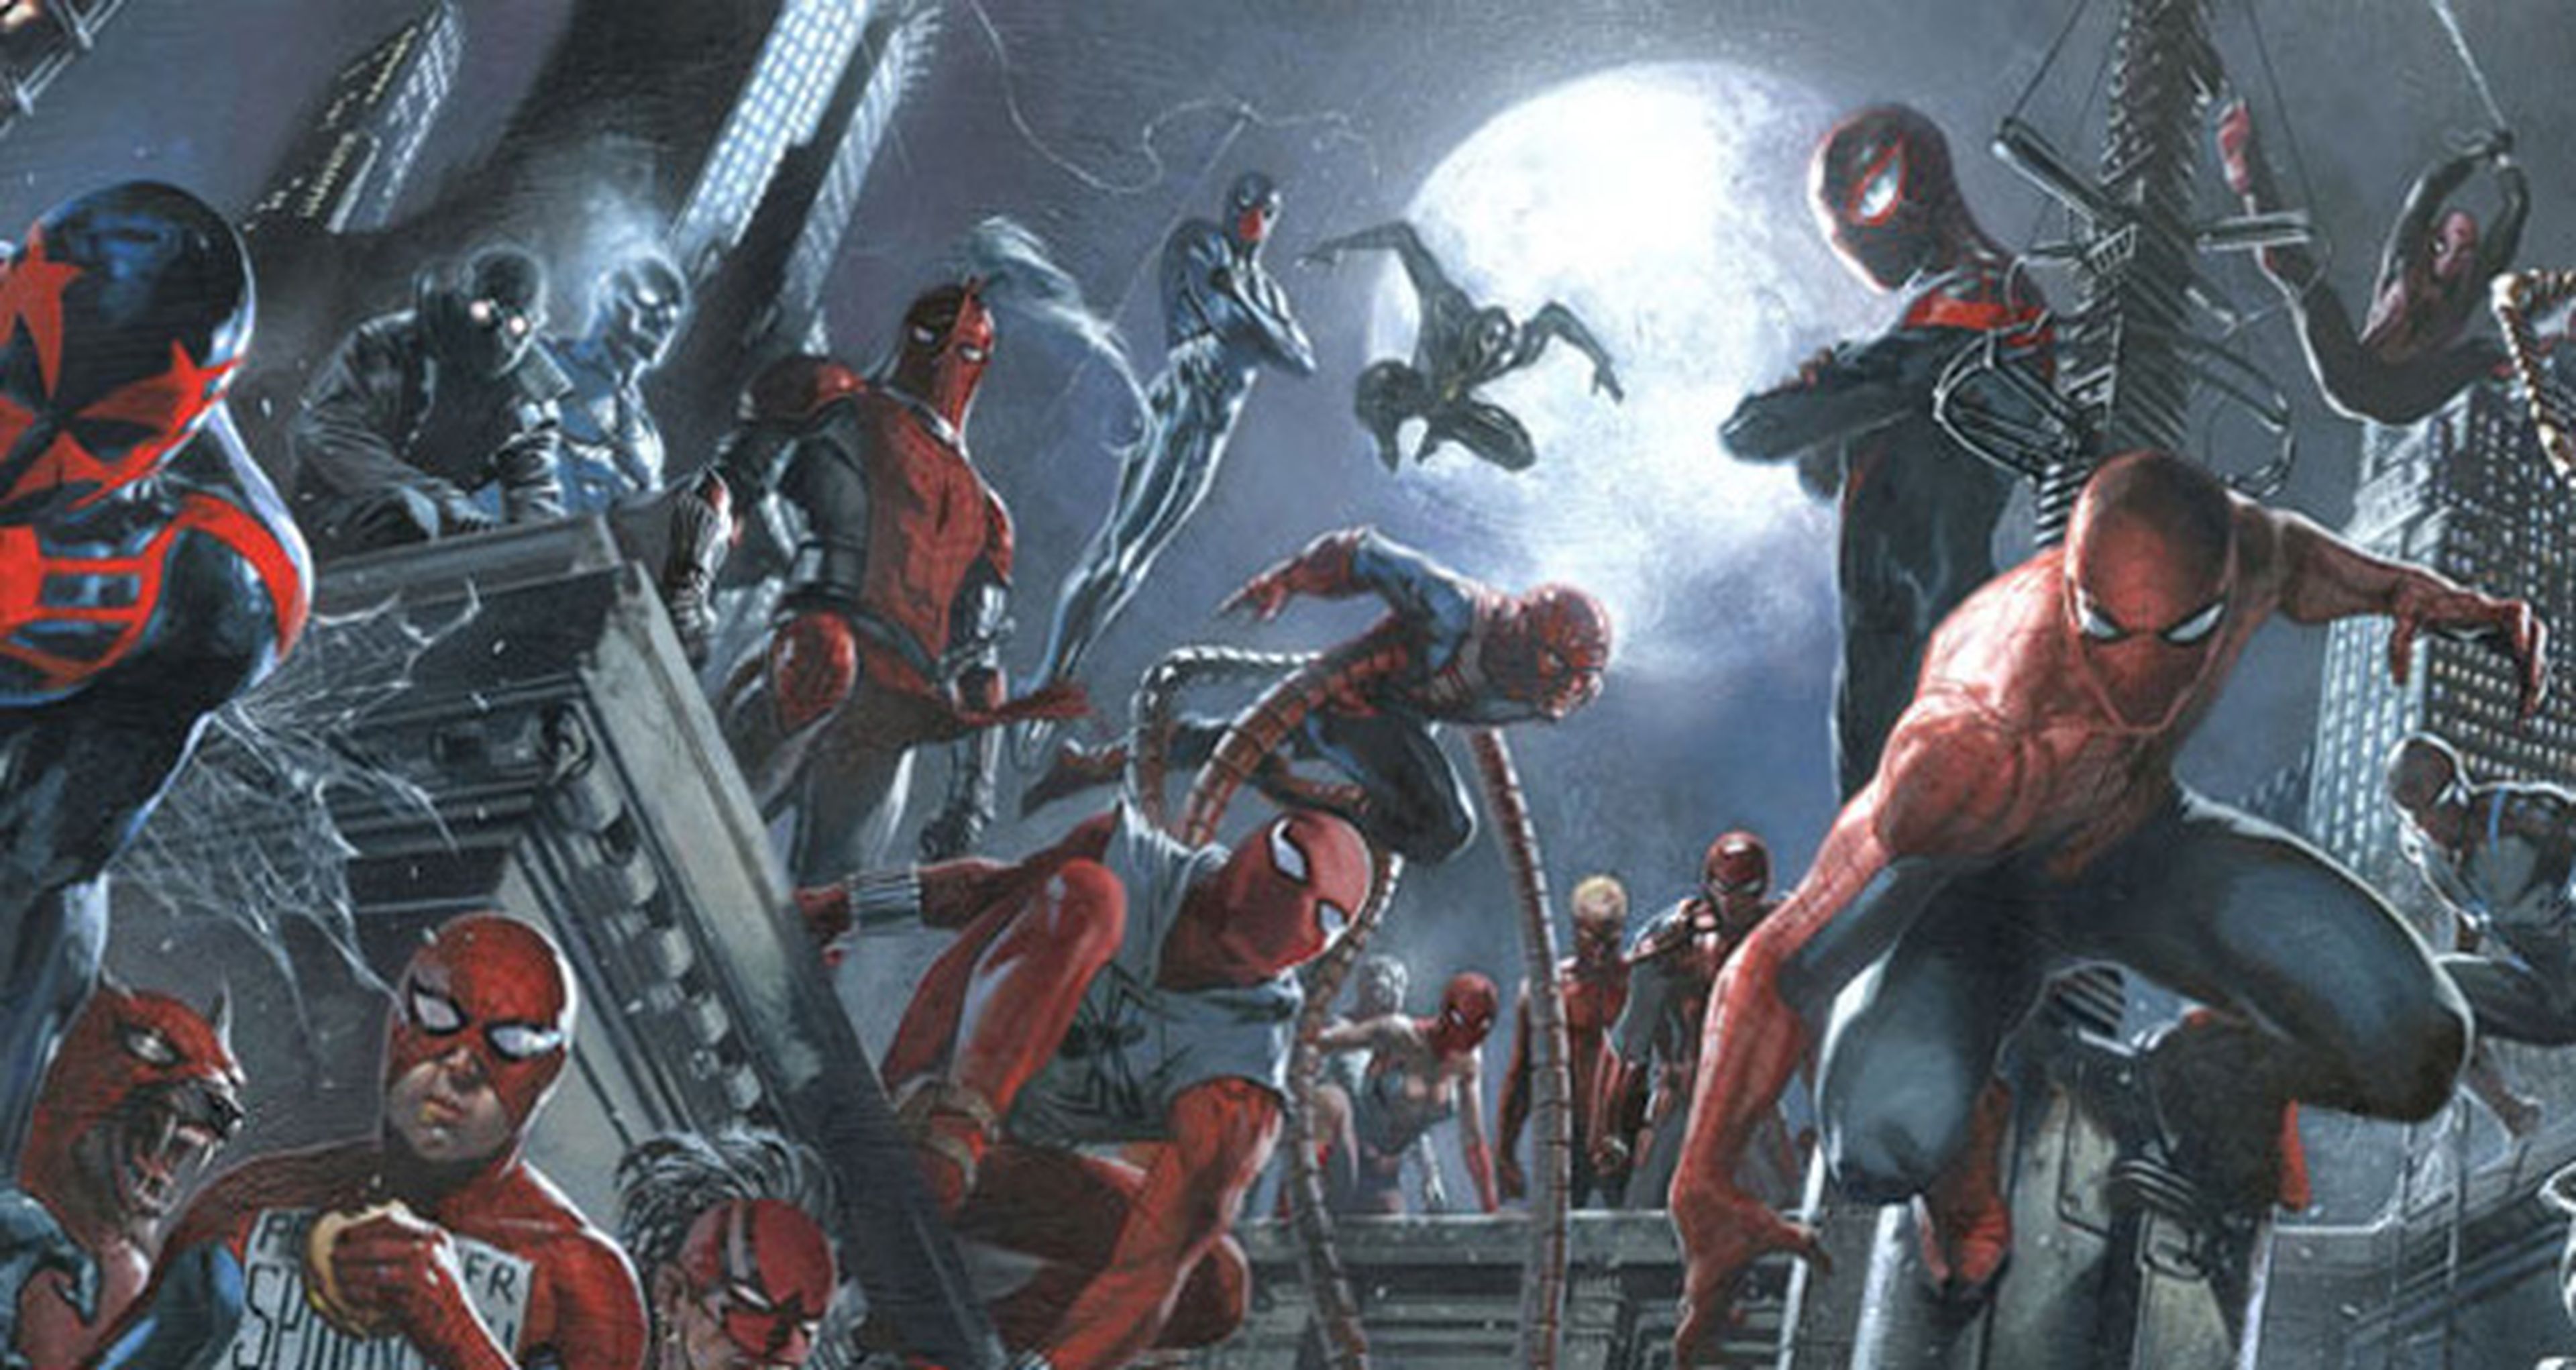 Spider-verse: La saga que reunirá a todos los Spider-man